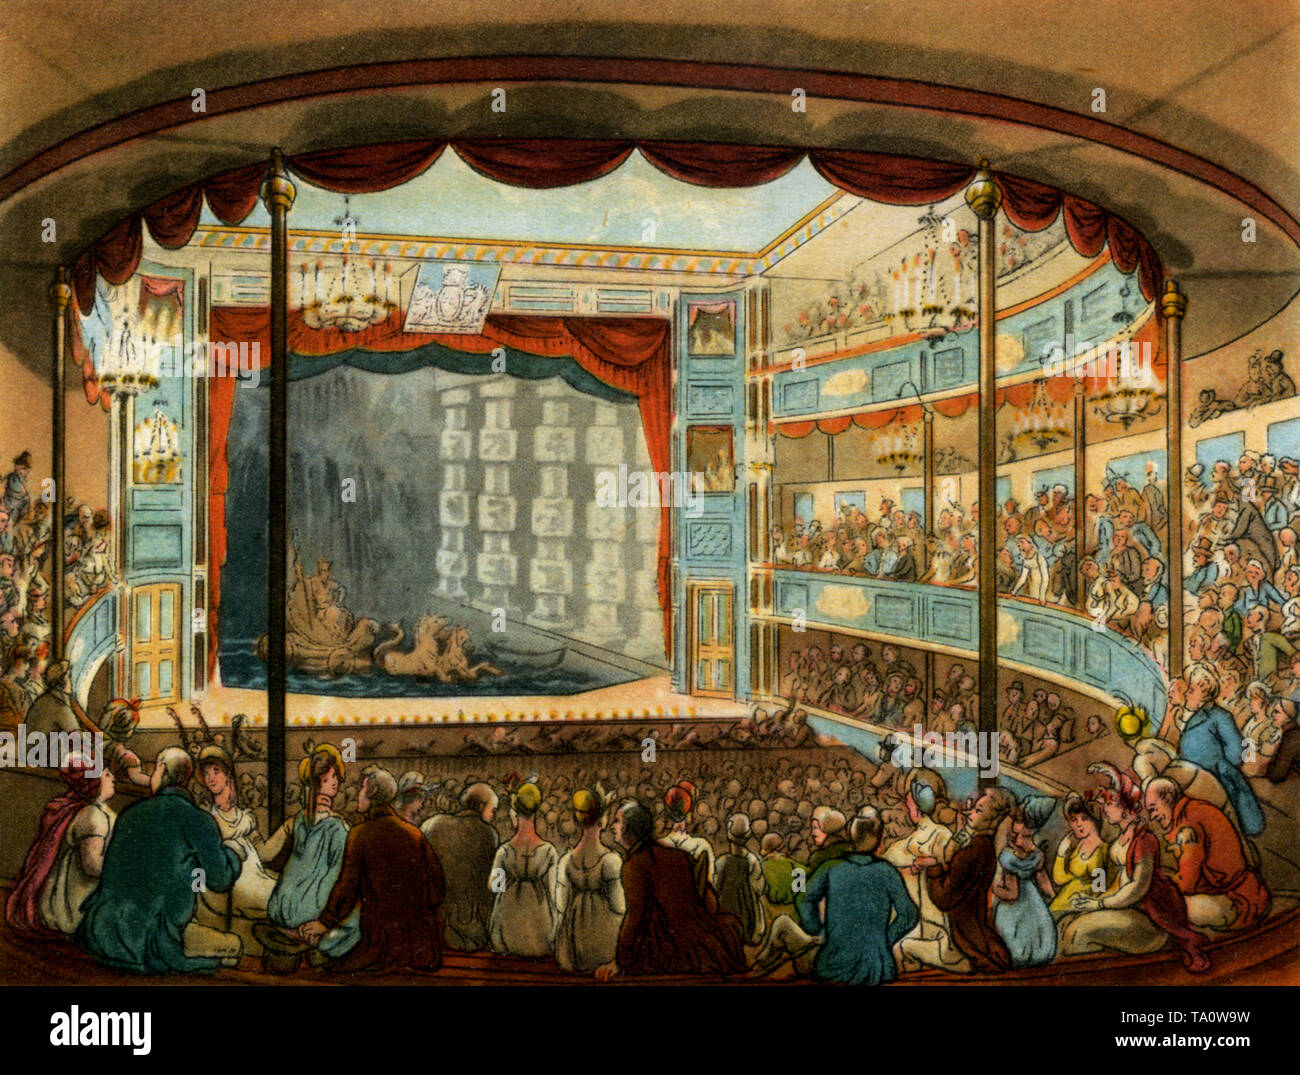 Sadler's Wells Theatre, c1808-1810. Un imprimé du microcosme de Londres, de William Henry Pyne (1770-1843). Illustré par Thomas Rowlandson (1756-1827) et Auguste Charles Pugin (1762-1832). Le magnifique auditorium de l'ancien théâtre Sadler's Wells. Aujourd'hui célèbre comme lieu de ballet, nous le voyons utilisé ici comme théâtre aquatique. Avec la construction d'un grand réservoir, inondé de la rivière New voisine, un théâtre aquatique a été utilisé pour mettre en scène des mélodrames navales extravagants. Banque D'Images